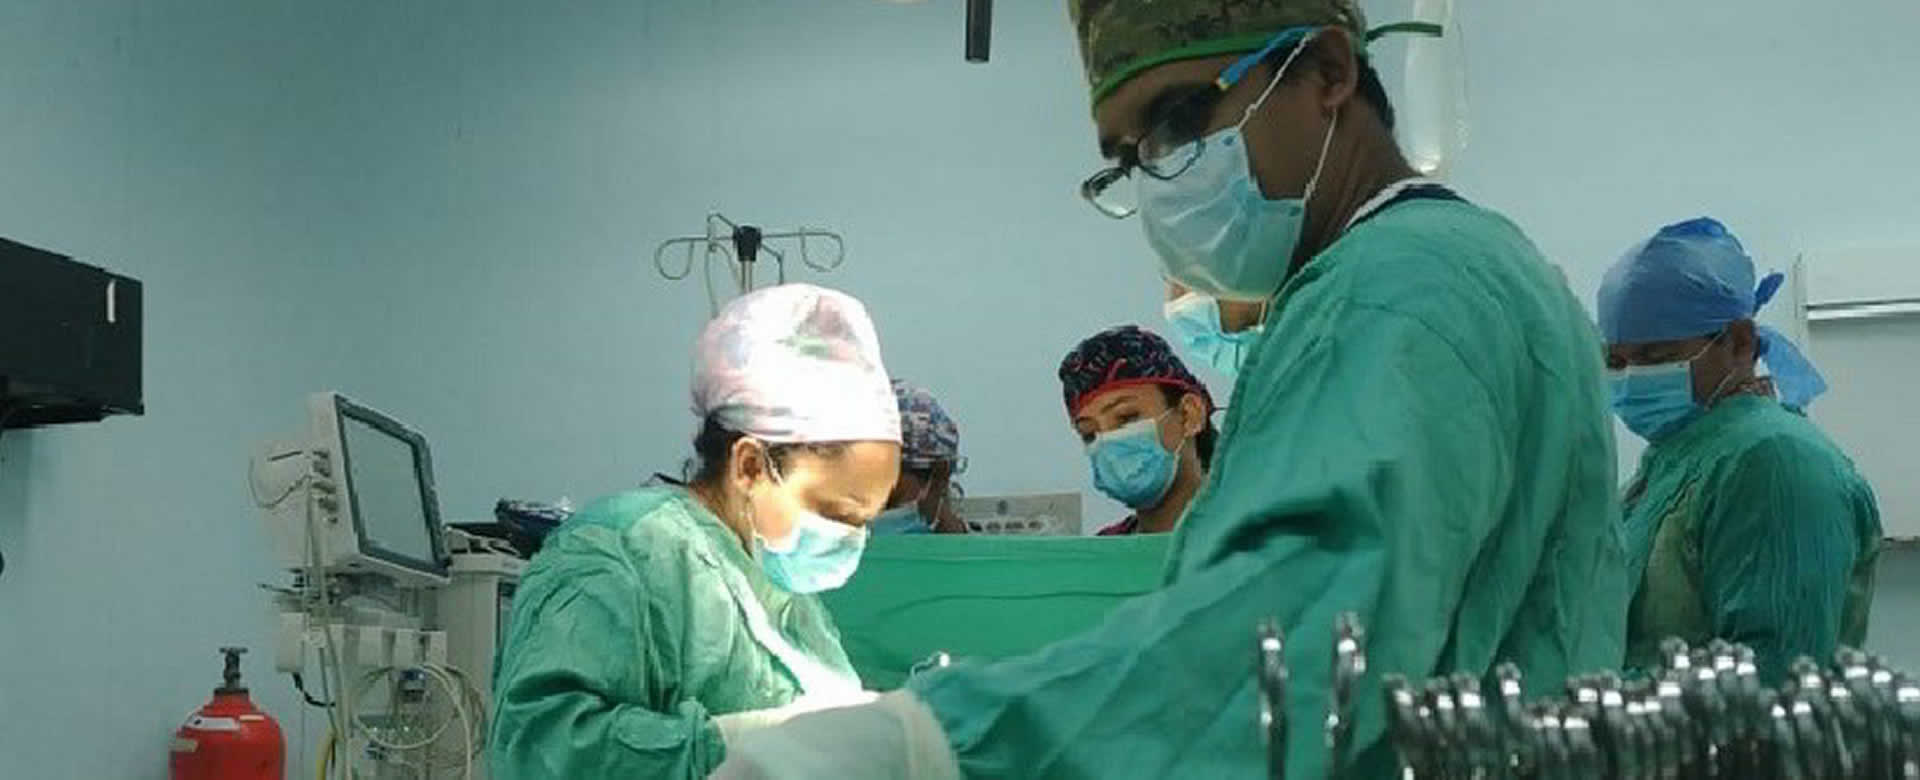 El Ministerio de Salud realizó jornada quirúrgica en Juigalpa